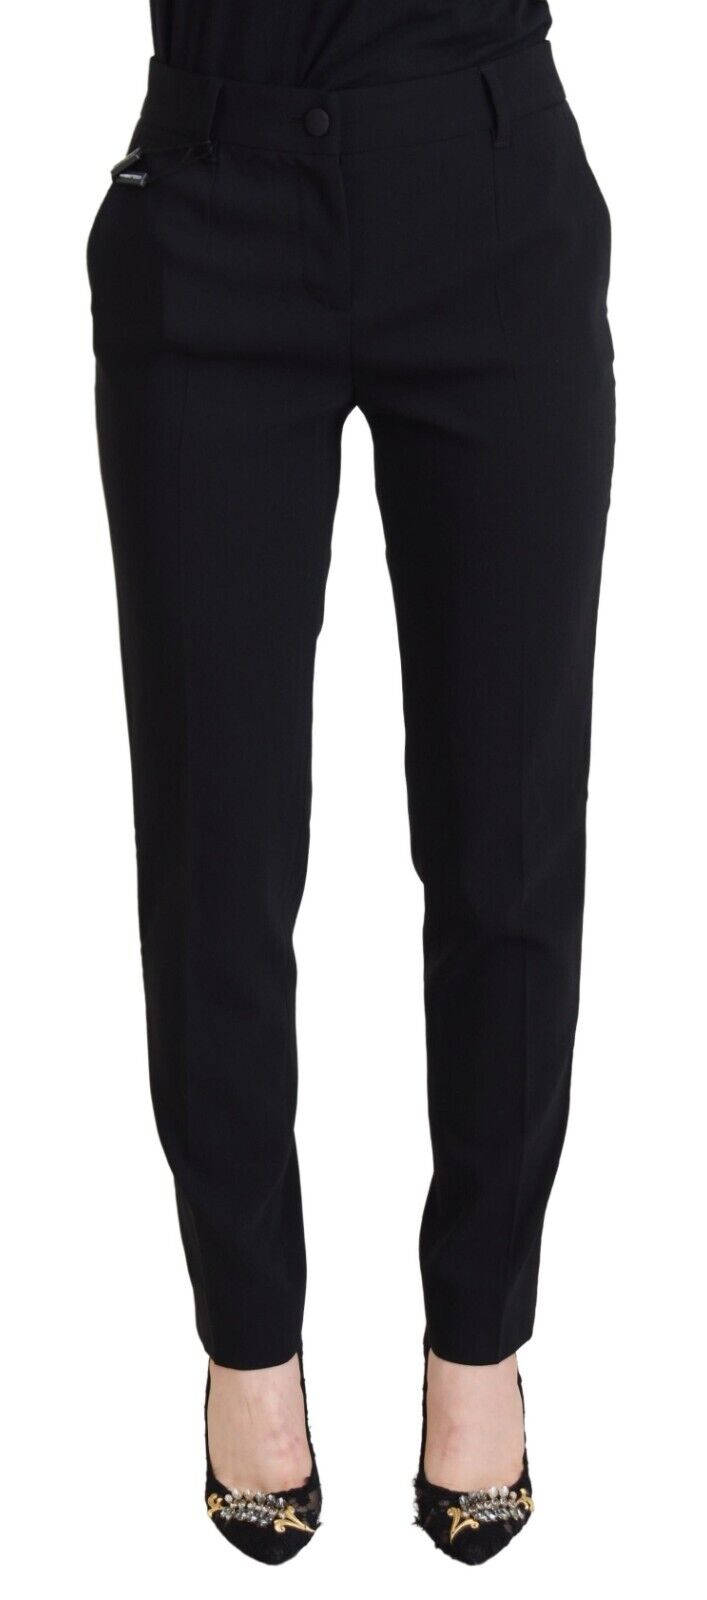 Брюки DOLCE & GABBANA Черные женские брюки с высокой талией IT40/US6/S Рекомендуемая розничная цена 1120 долларов США